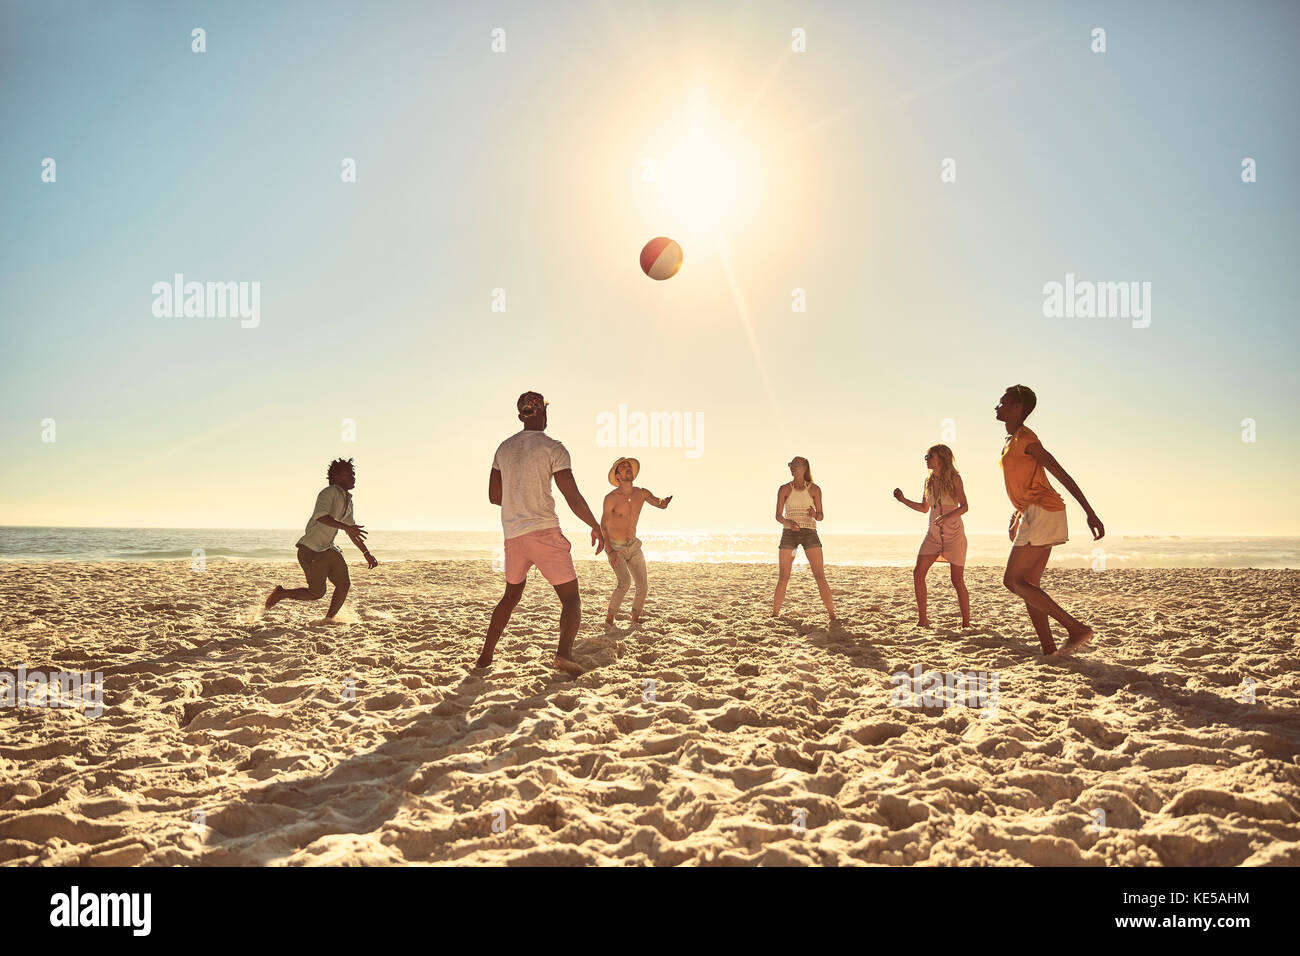 Jeunes amis jouant avec un ballon de plage sur une plage ensoleillée d'été Banque D'Images